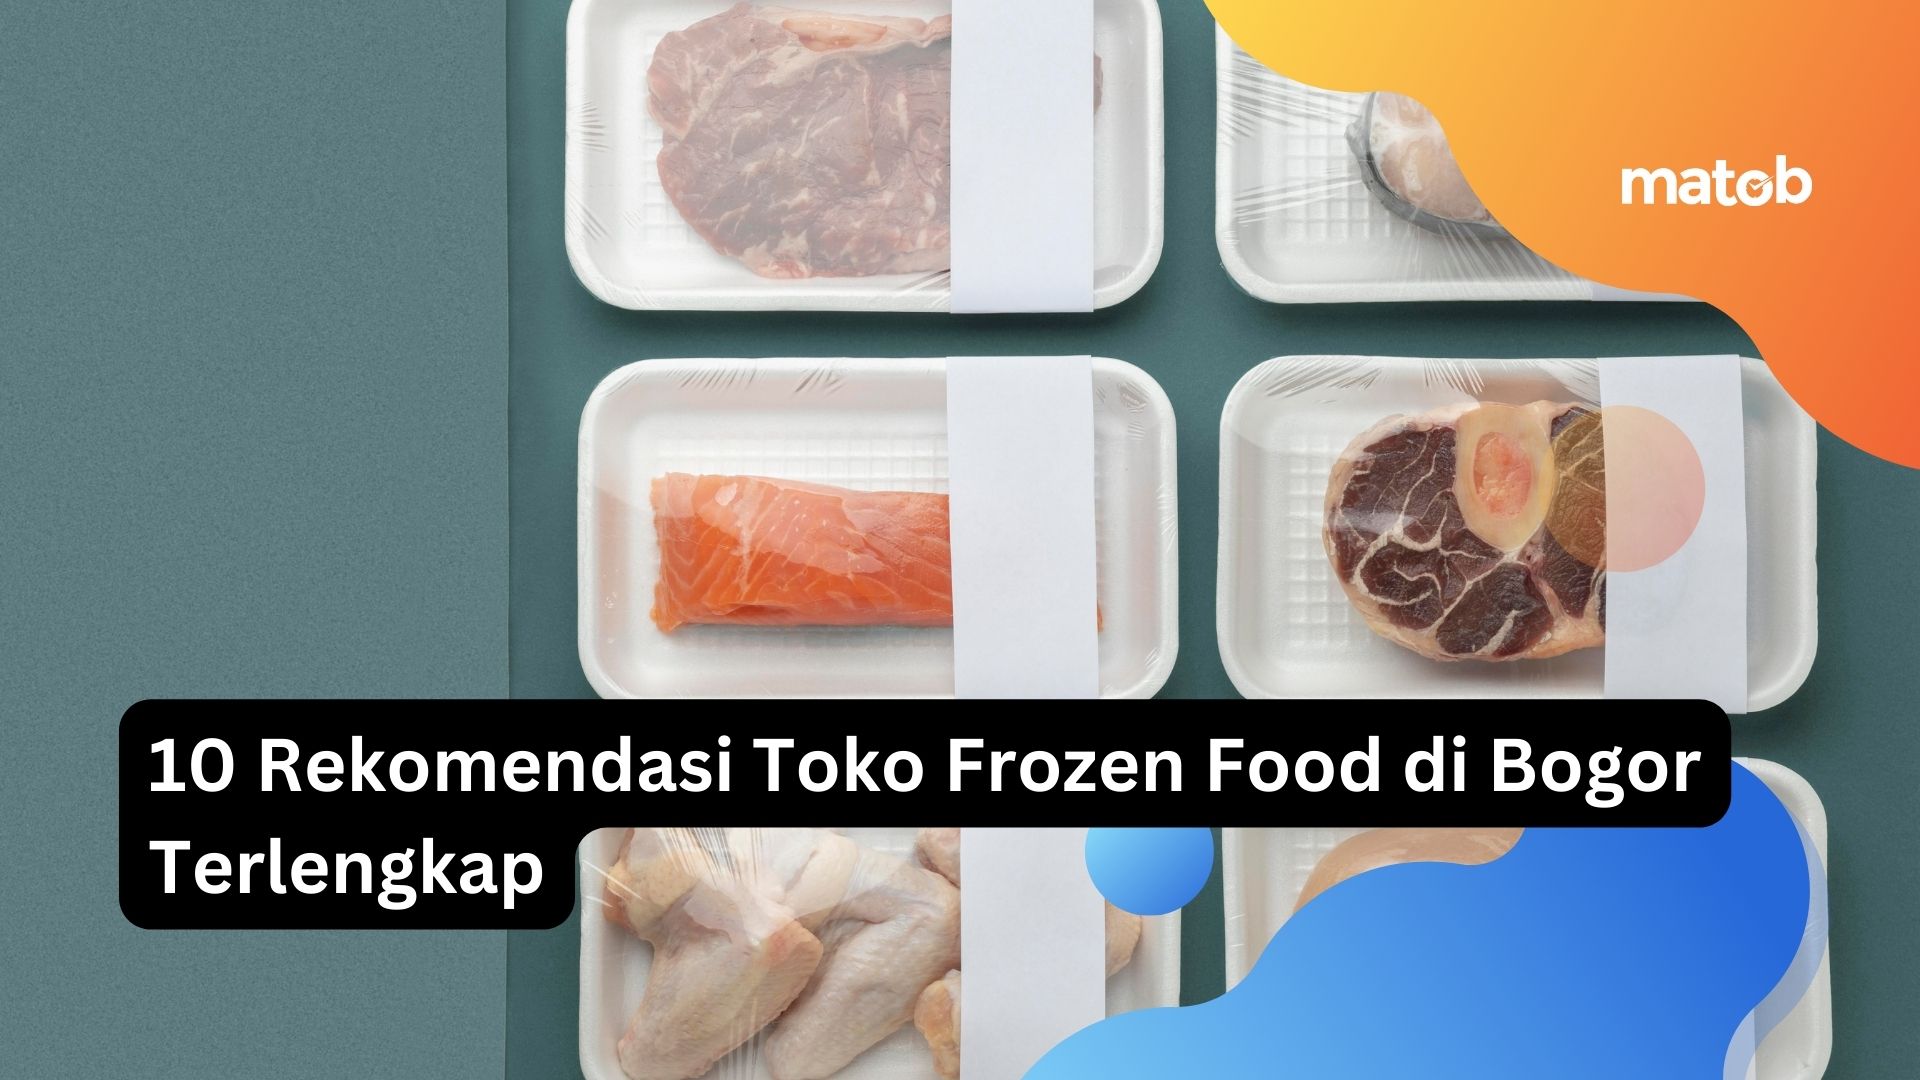 10 Rekomendasi Toko Frozen Food di Bogor Terlengkap